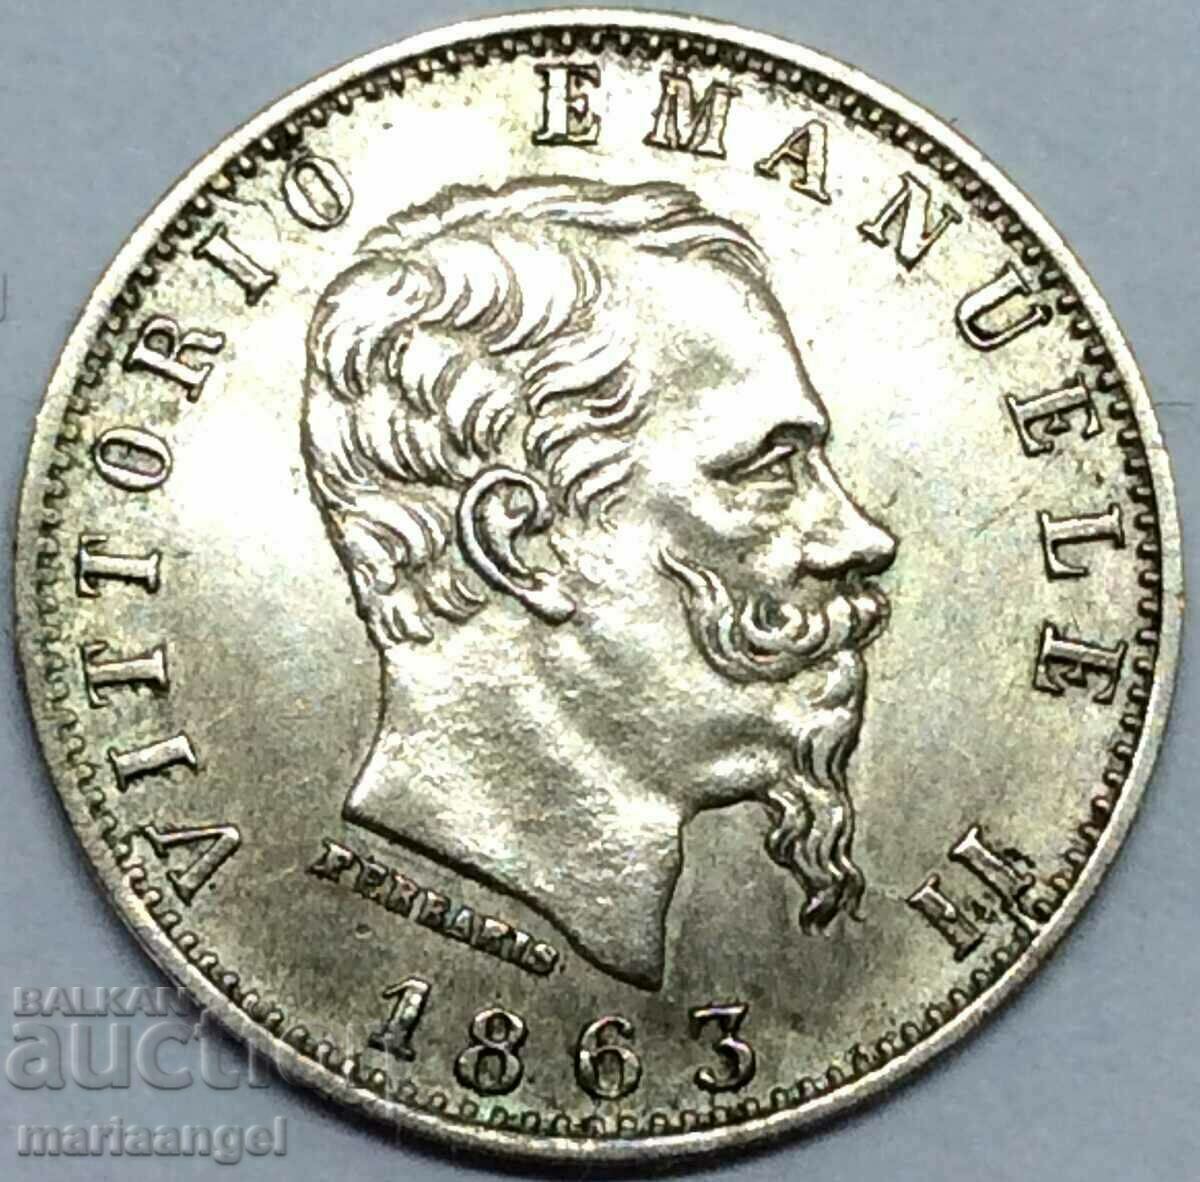 Italy 20 centesimi 1863 silver